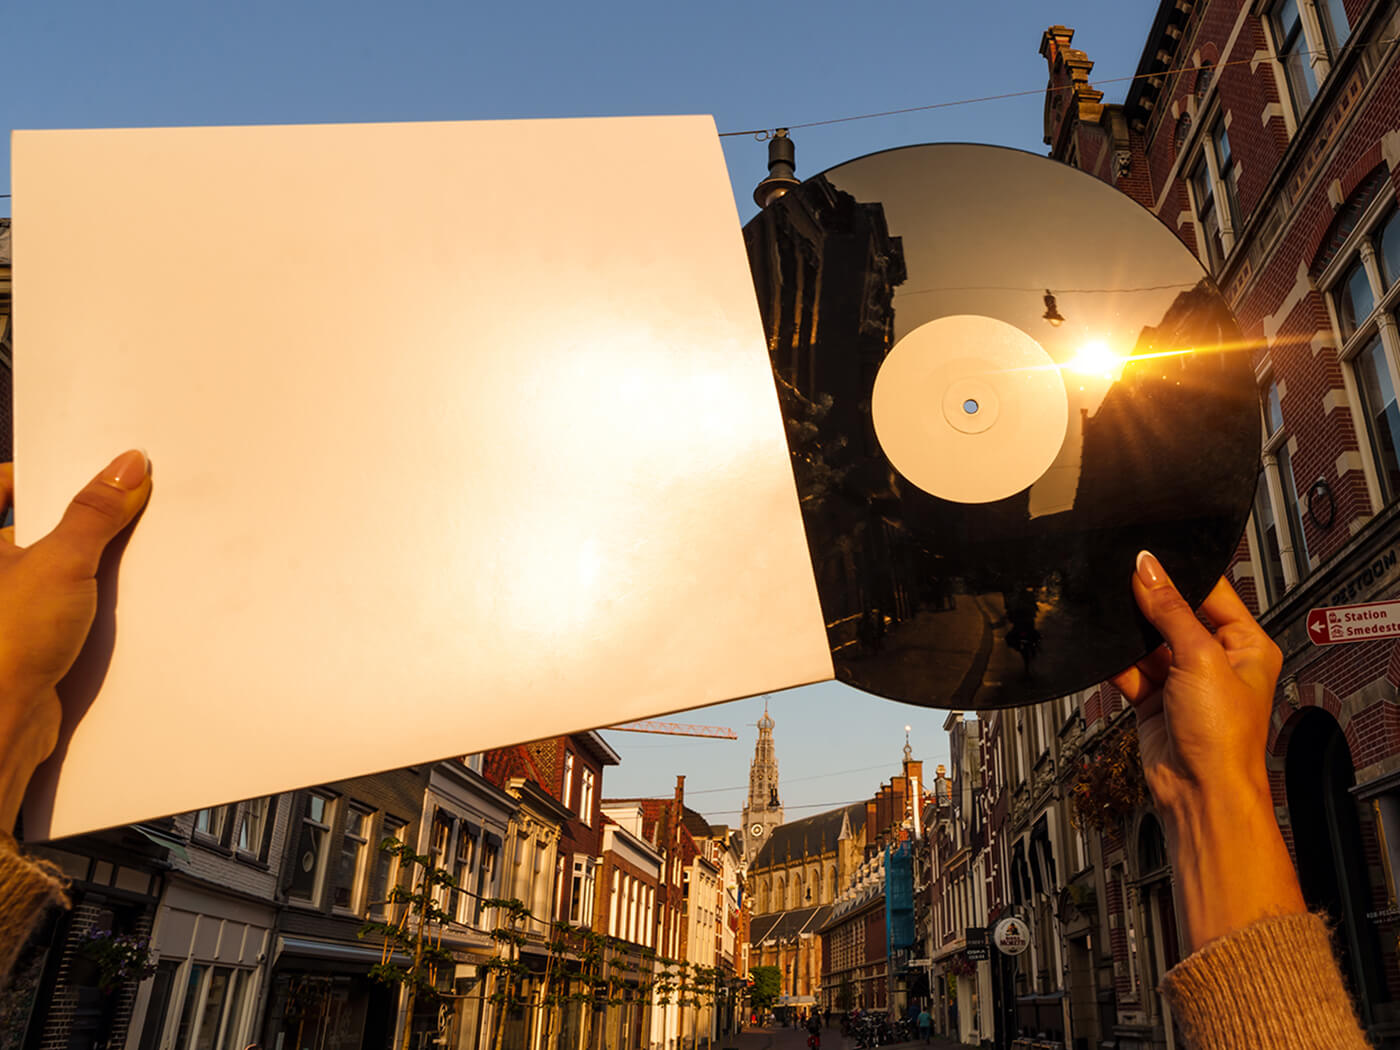 Vinyl against the sunlight in the Netherlands